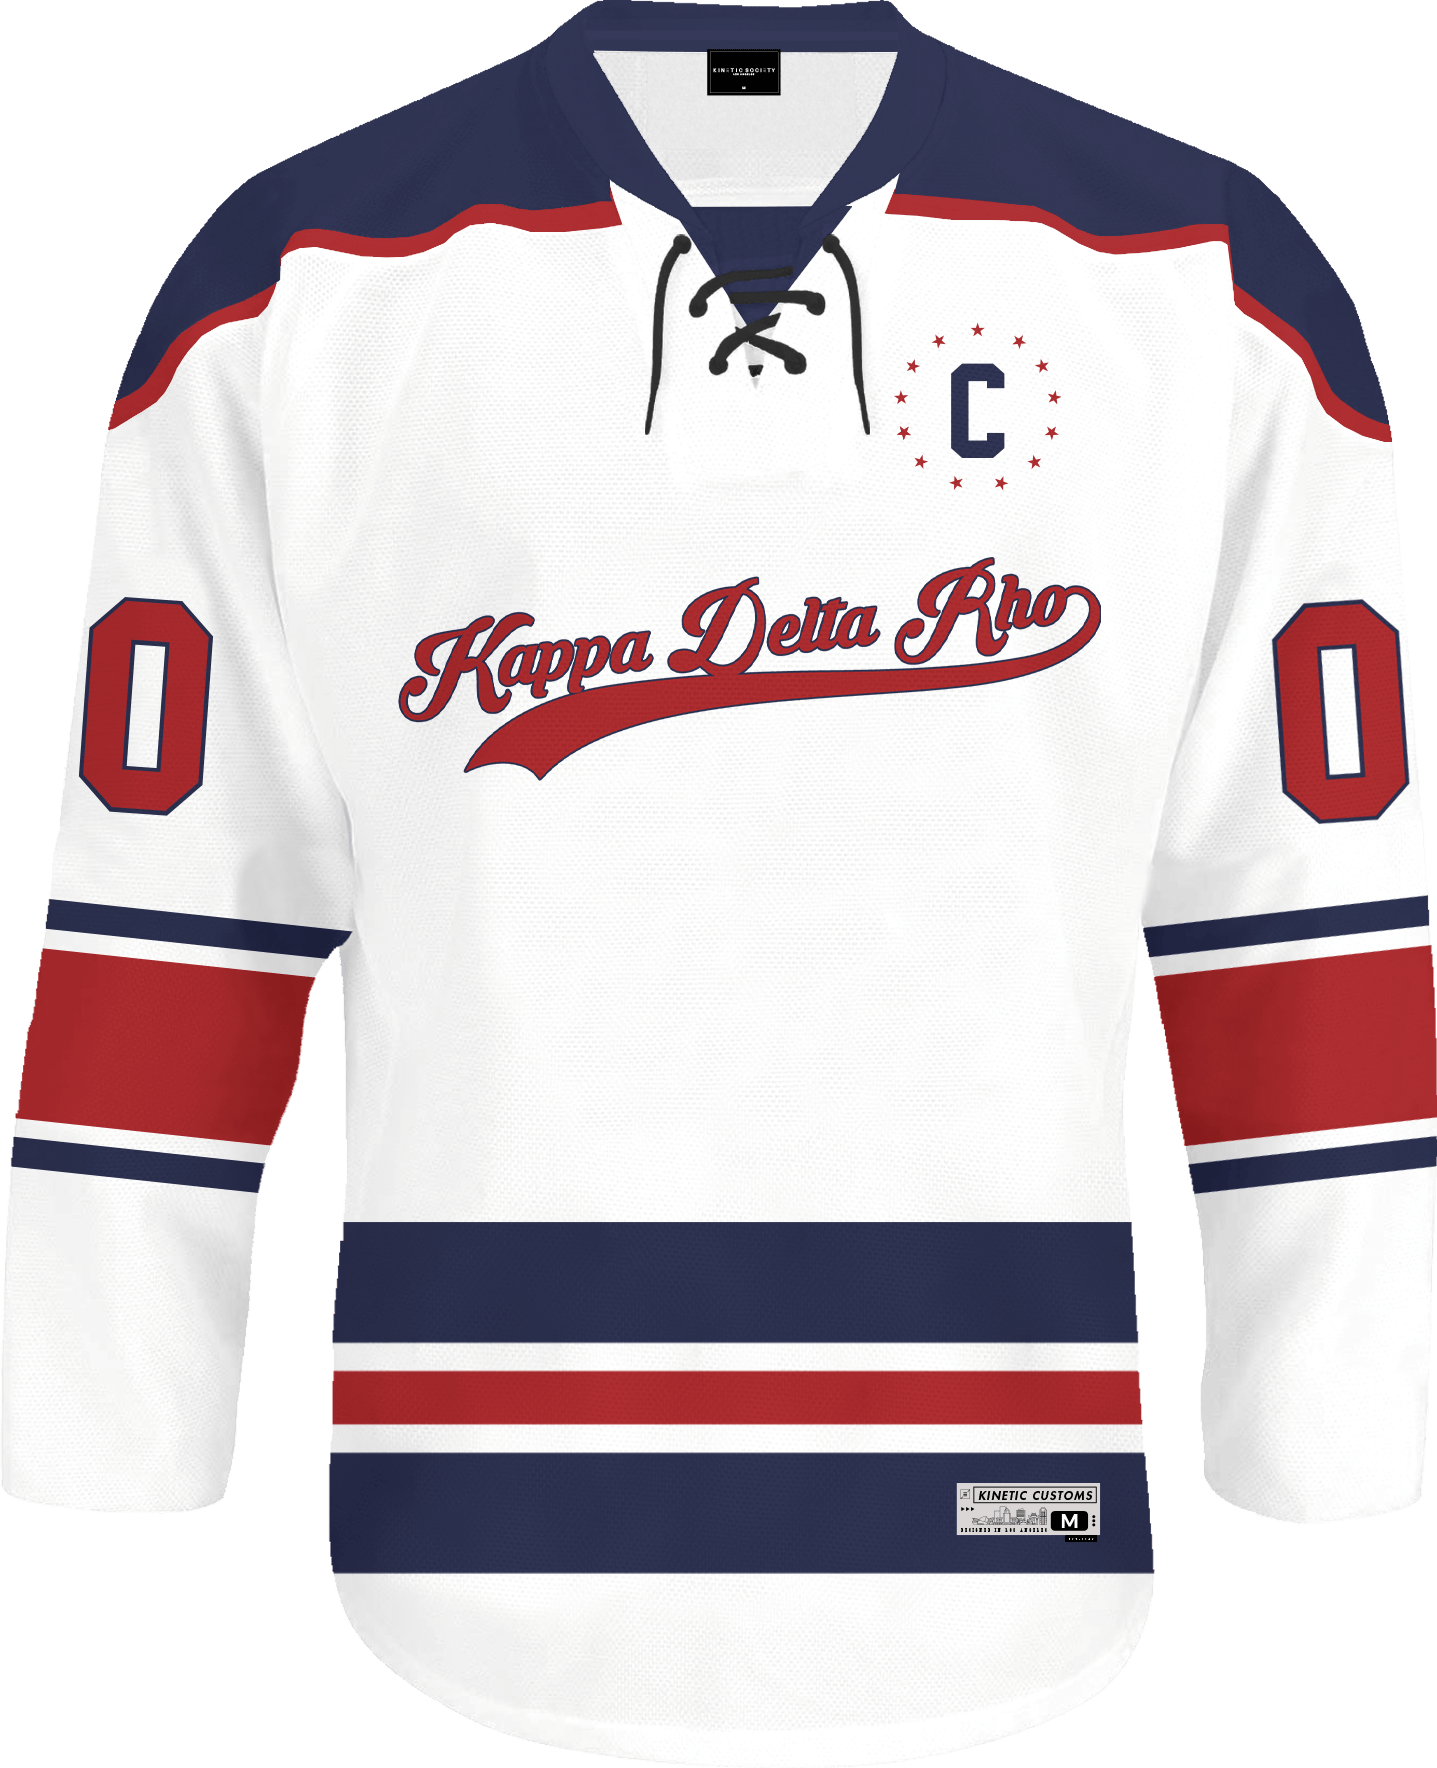 Kappa Delta Rho - Captain Hockey Jersey Hockey Kinetic Society LLC 